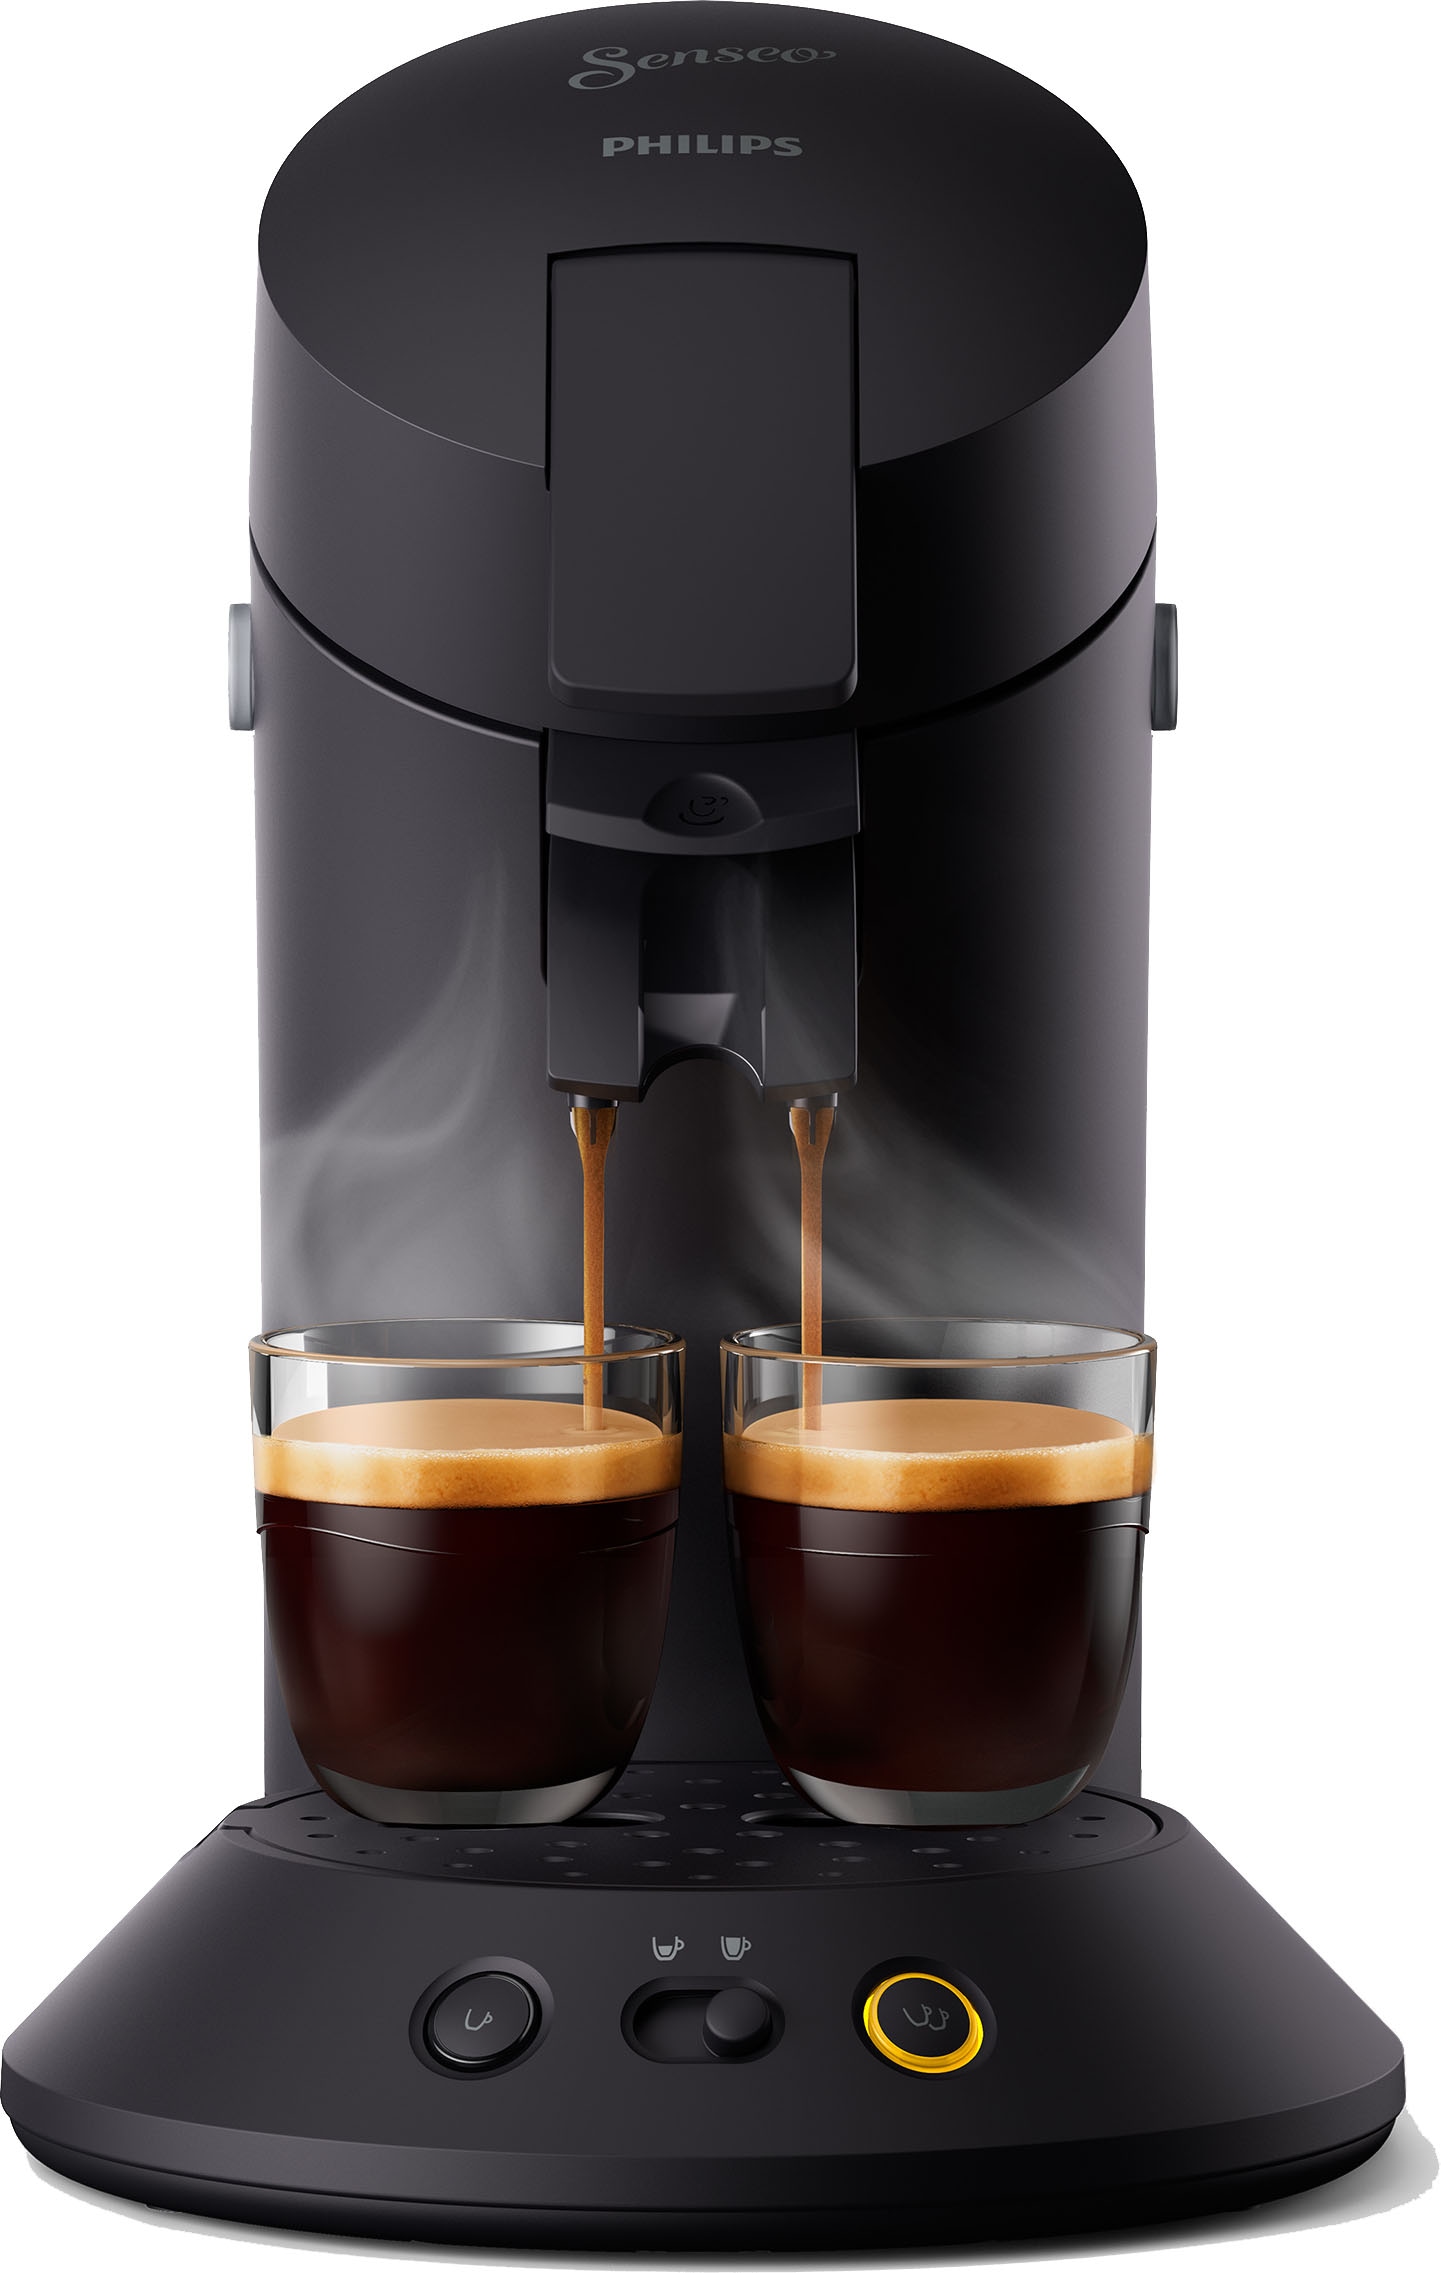 Philips Senseo Kaffeepadmaschine »Original Plus CSA 210/60«, aus 28% recyceltem  Plastik und mit 2 Kaffeespezialitäten, mattschwarz mit 3 Jahren XXL  Garantie